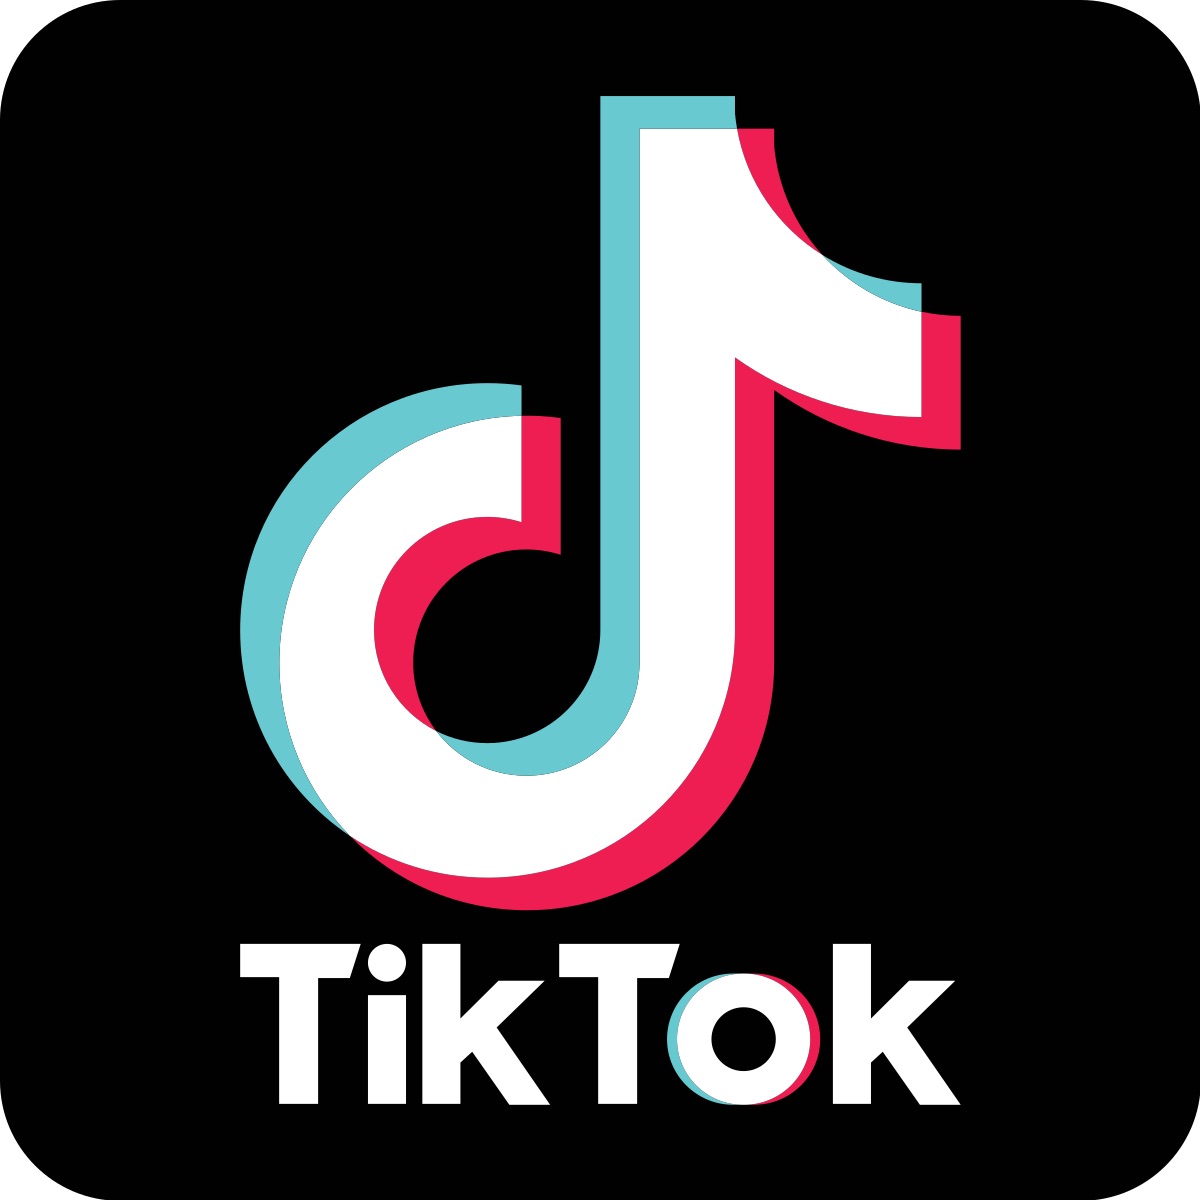 El top 100 imagen imagenes de el logo de tik tok